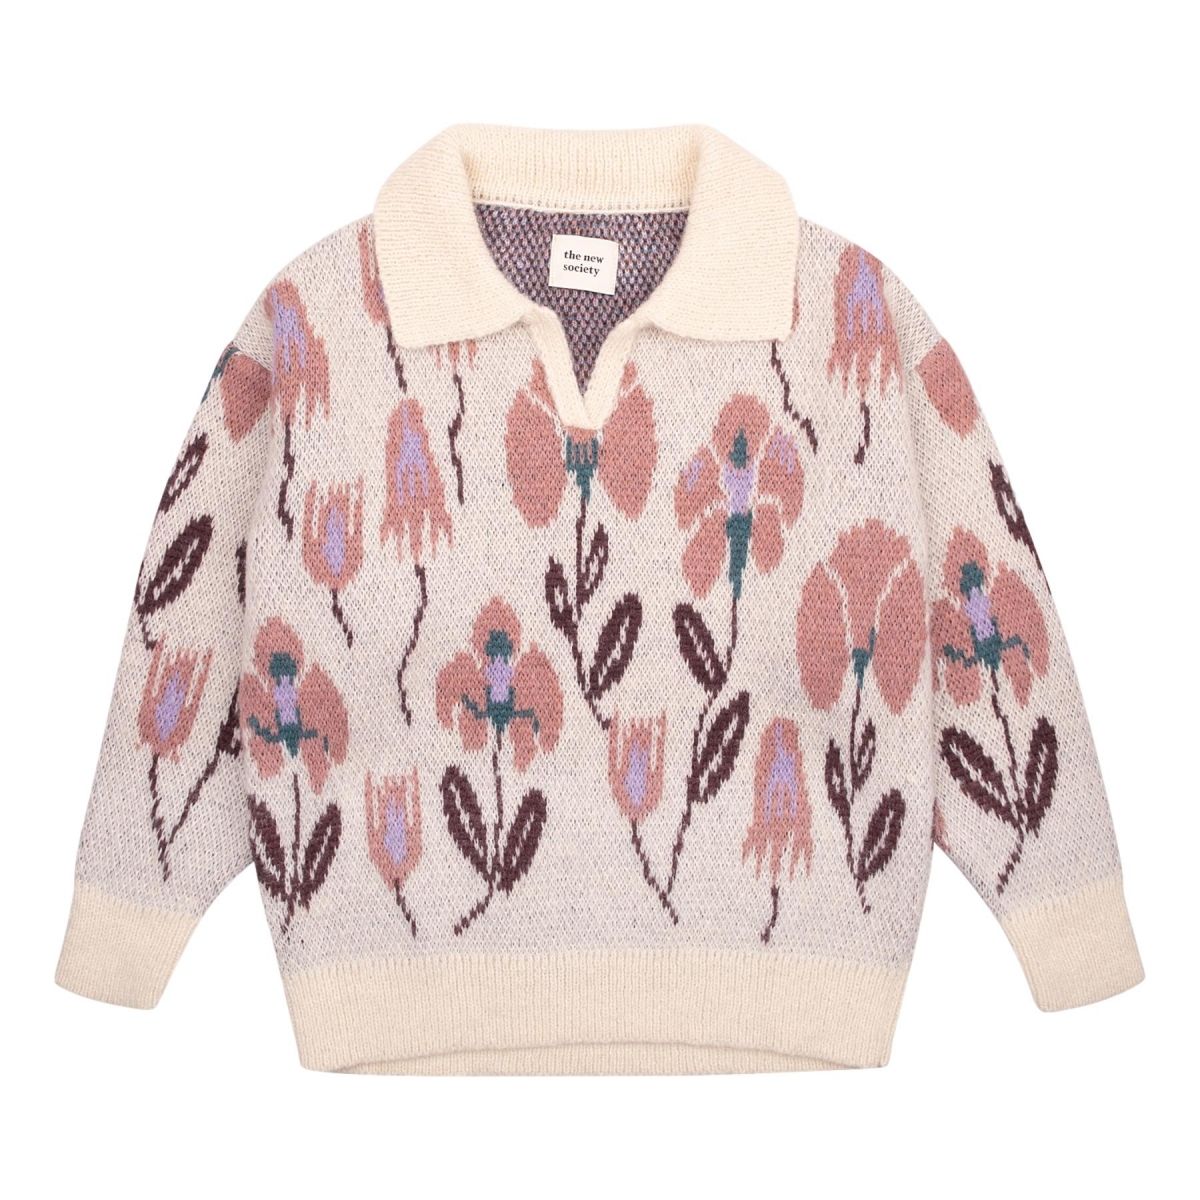 The New Society Matilde sweter w kwiatki różowy FW20KT800701 